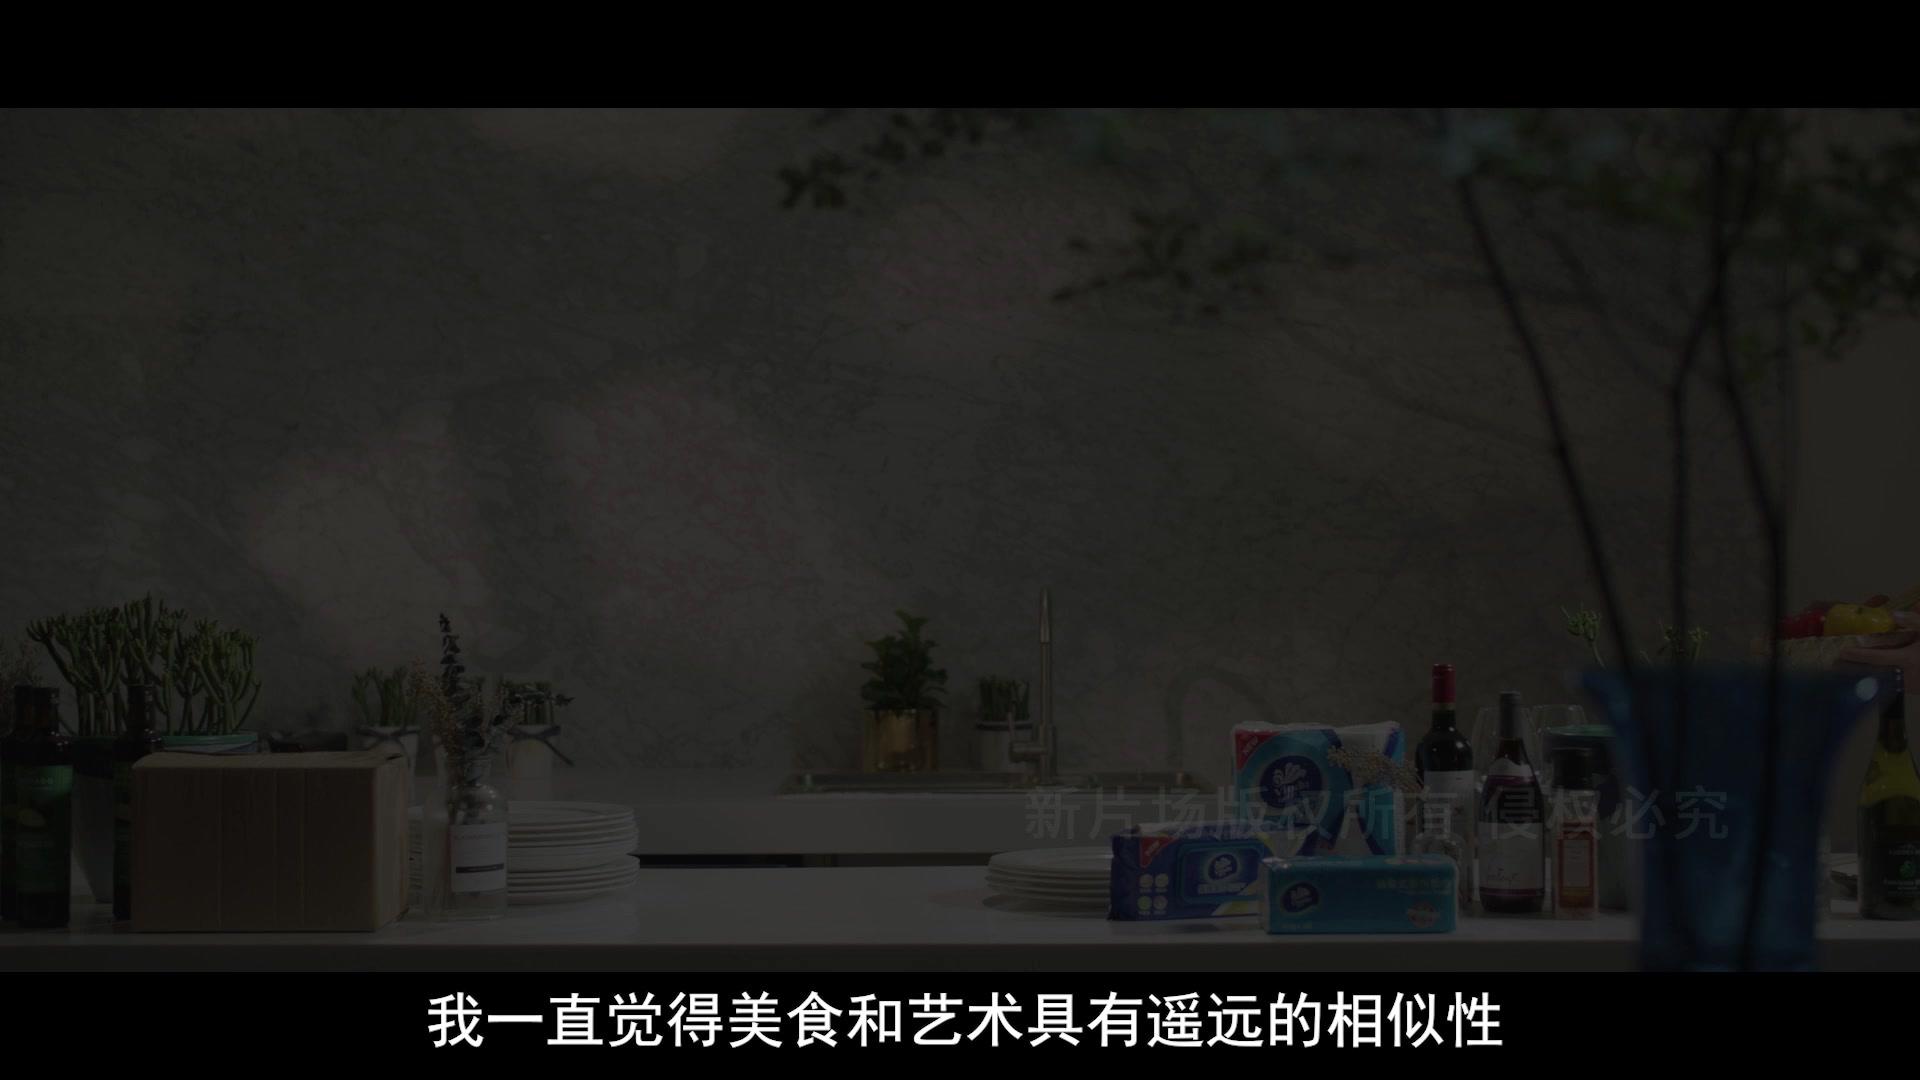 《京东法餐湿纸巾》宣传纪录片